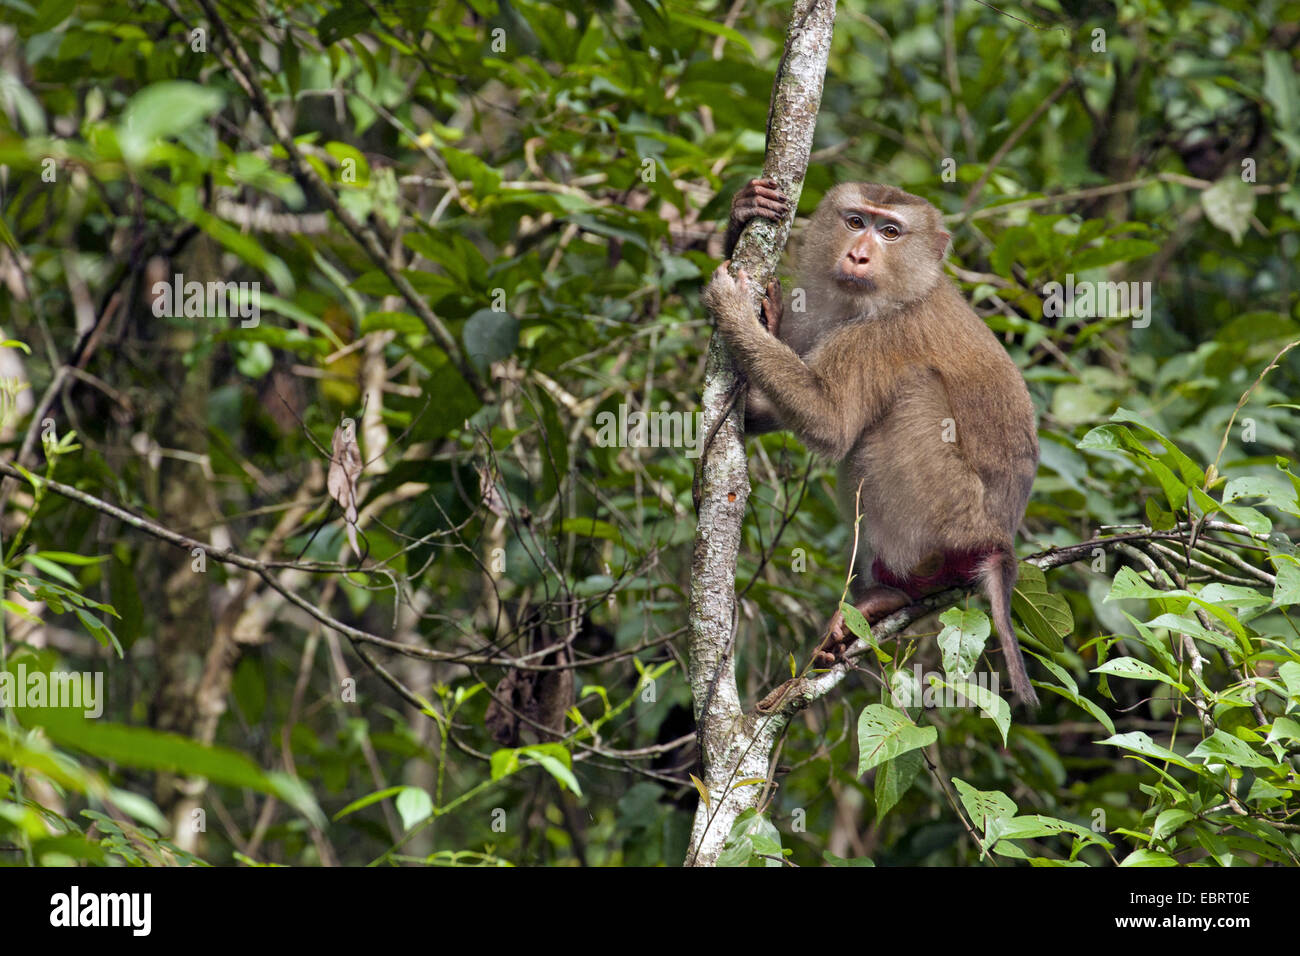 Porc nord-tailed macaque (Macaca leonina), sur une branche dans un arbre, la Thaïlande, le parc national Khao Yai Banque D'Images